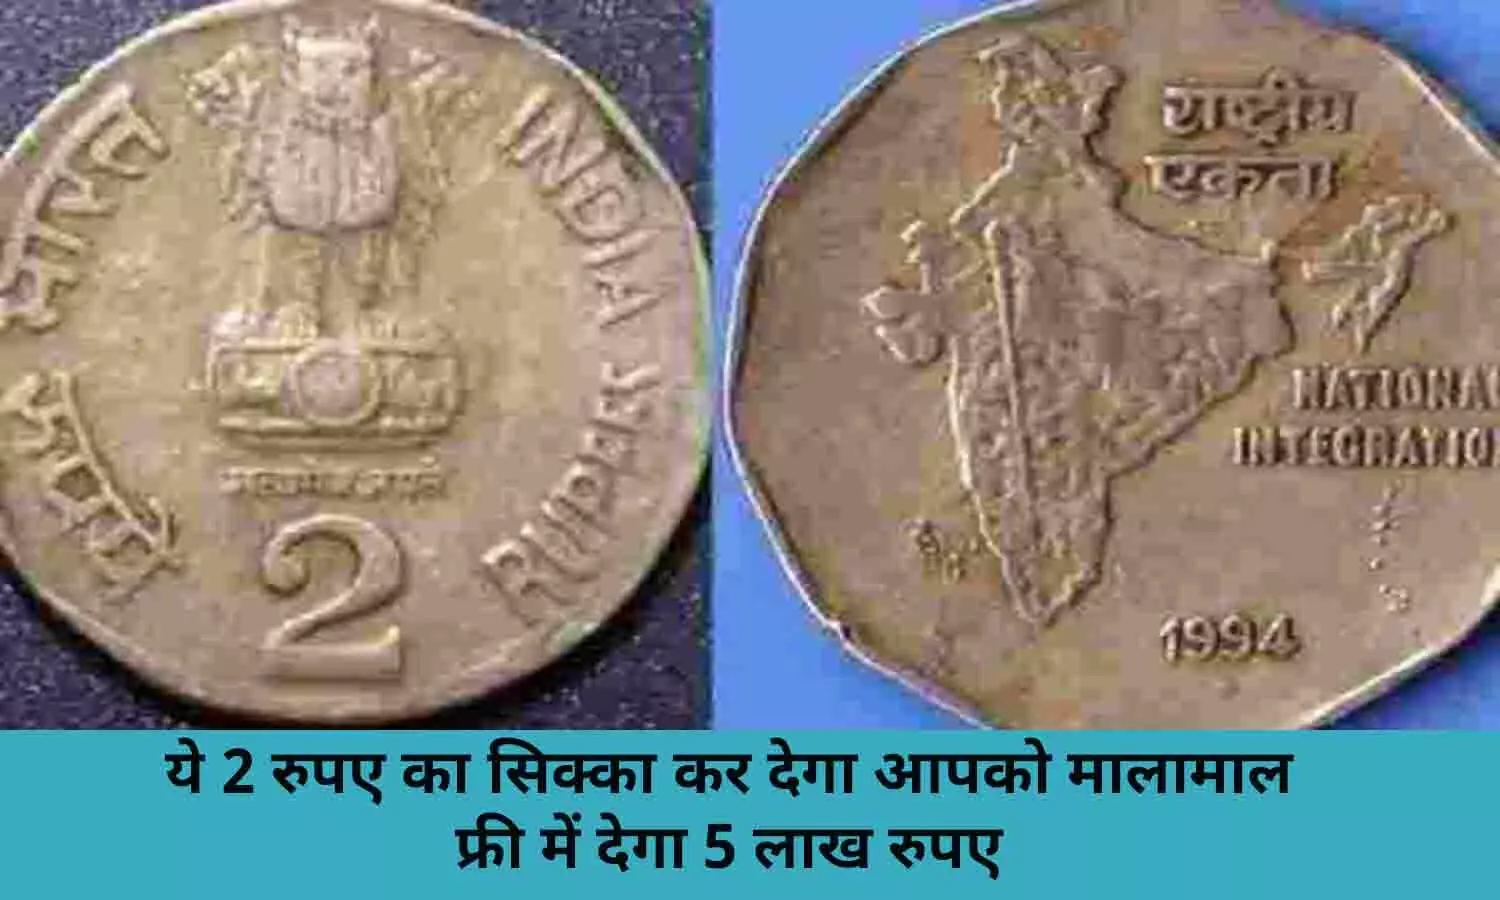 Old Notes and Coin Selling In Hindi 2022:1994 सीरीज का विश्व खाद्य दिवस के मौके पर बना इस 2 के सिक्के के बदले आपको फ्री में मिलेंगे ₹500000, फटाफट ढूढ़े ये सिक्का